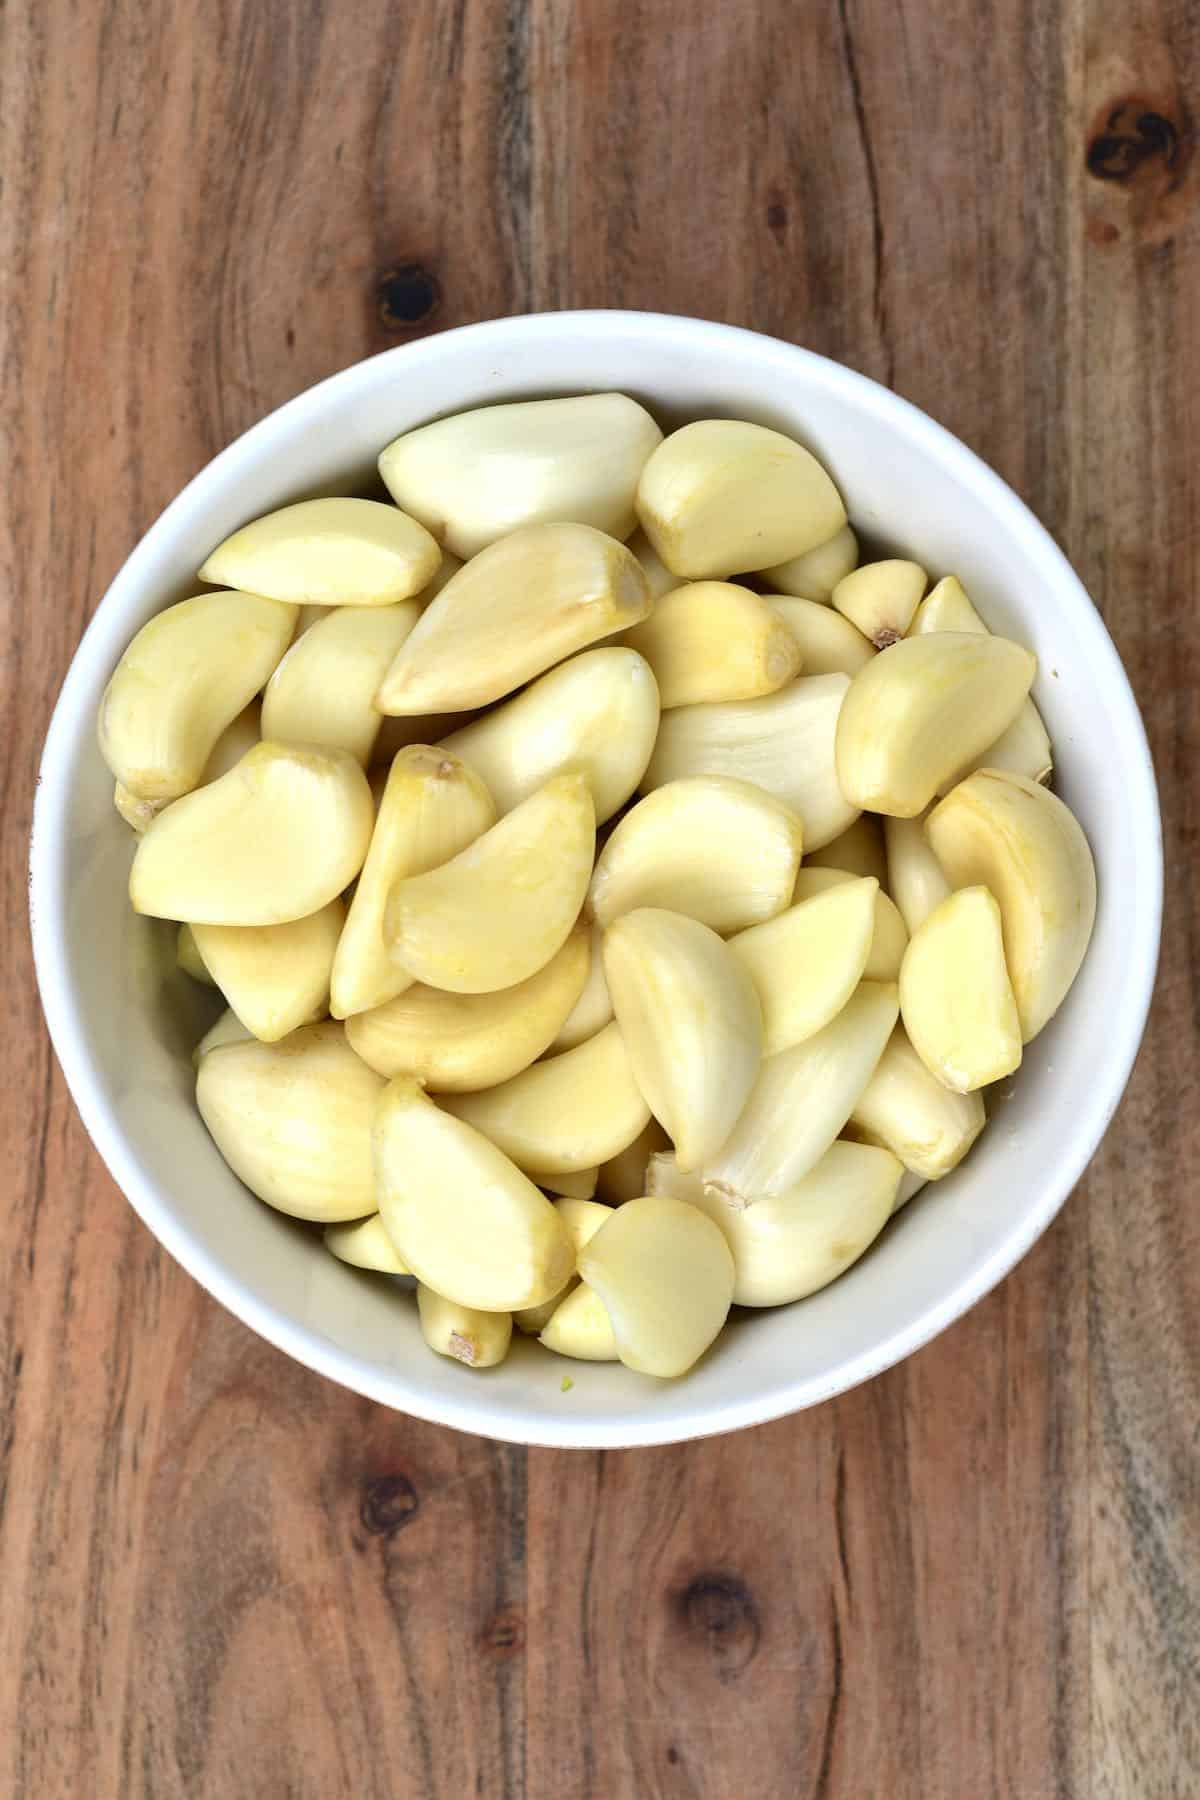 Why You Should Buy Frozen Garlic